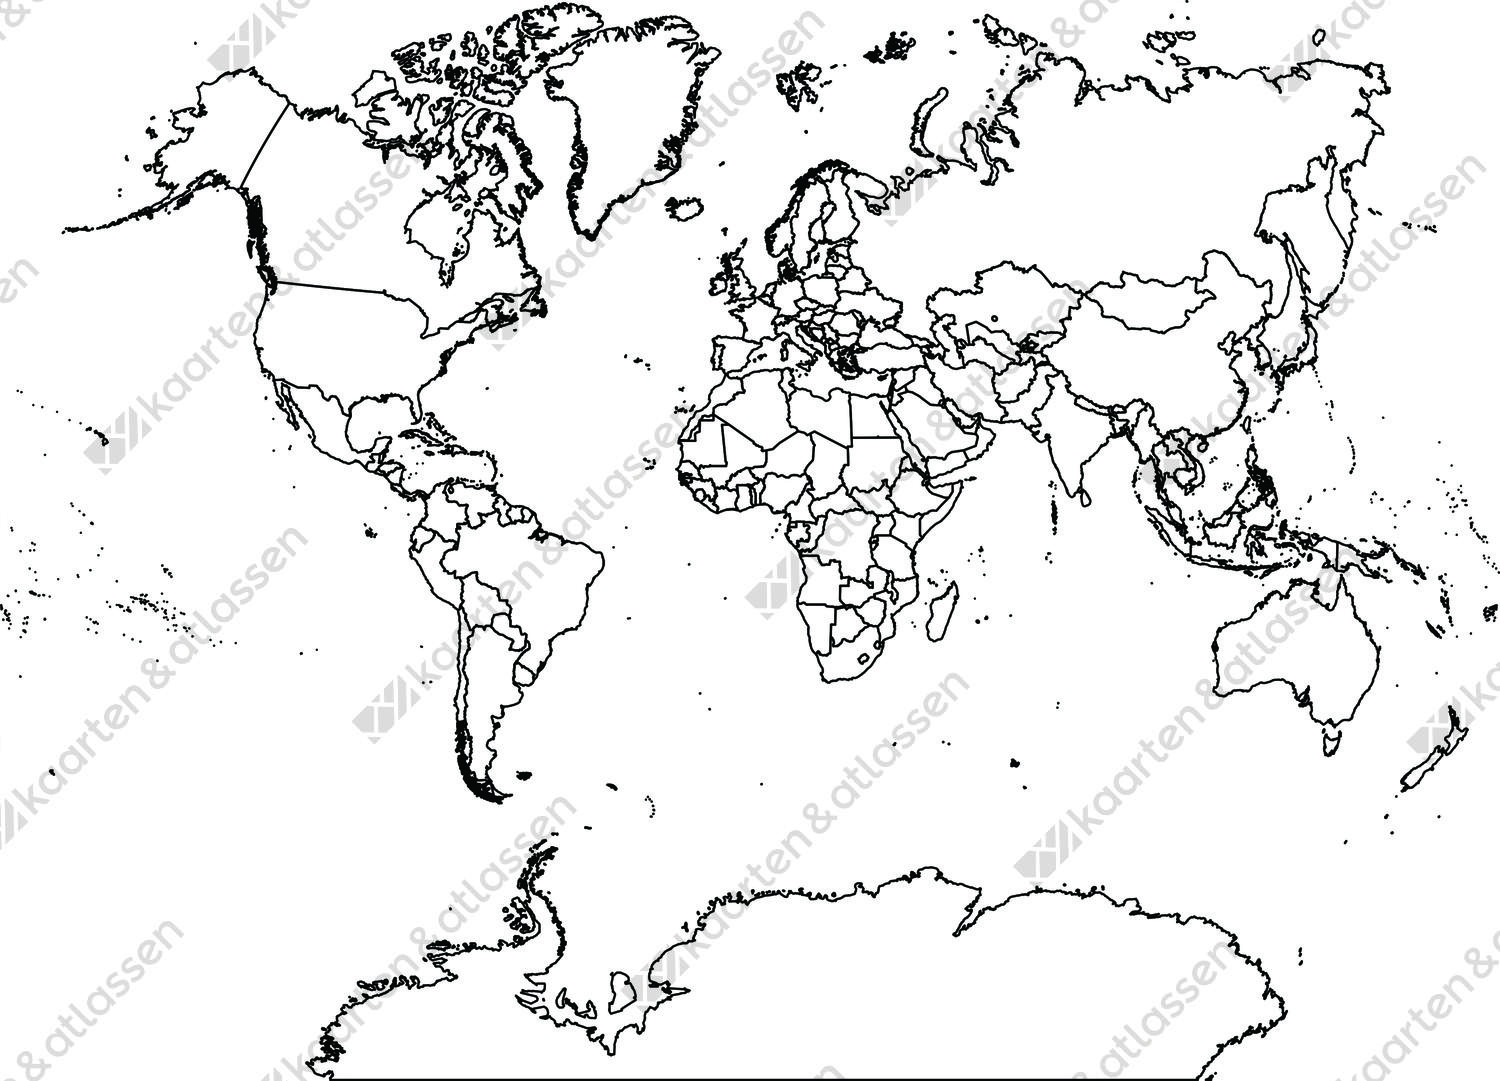 Digitale wereldkaart van der Grinten projectie (gratis)